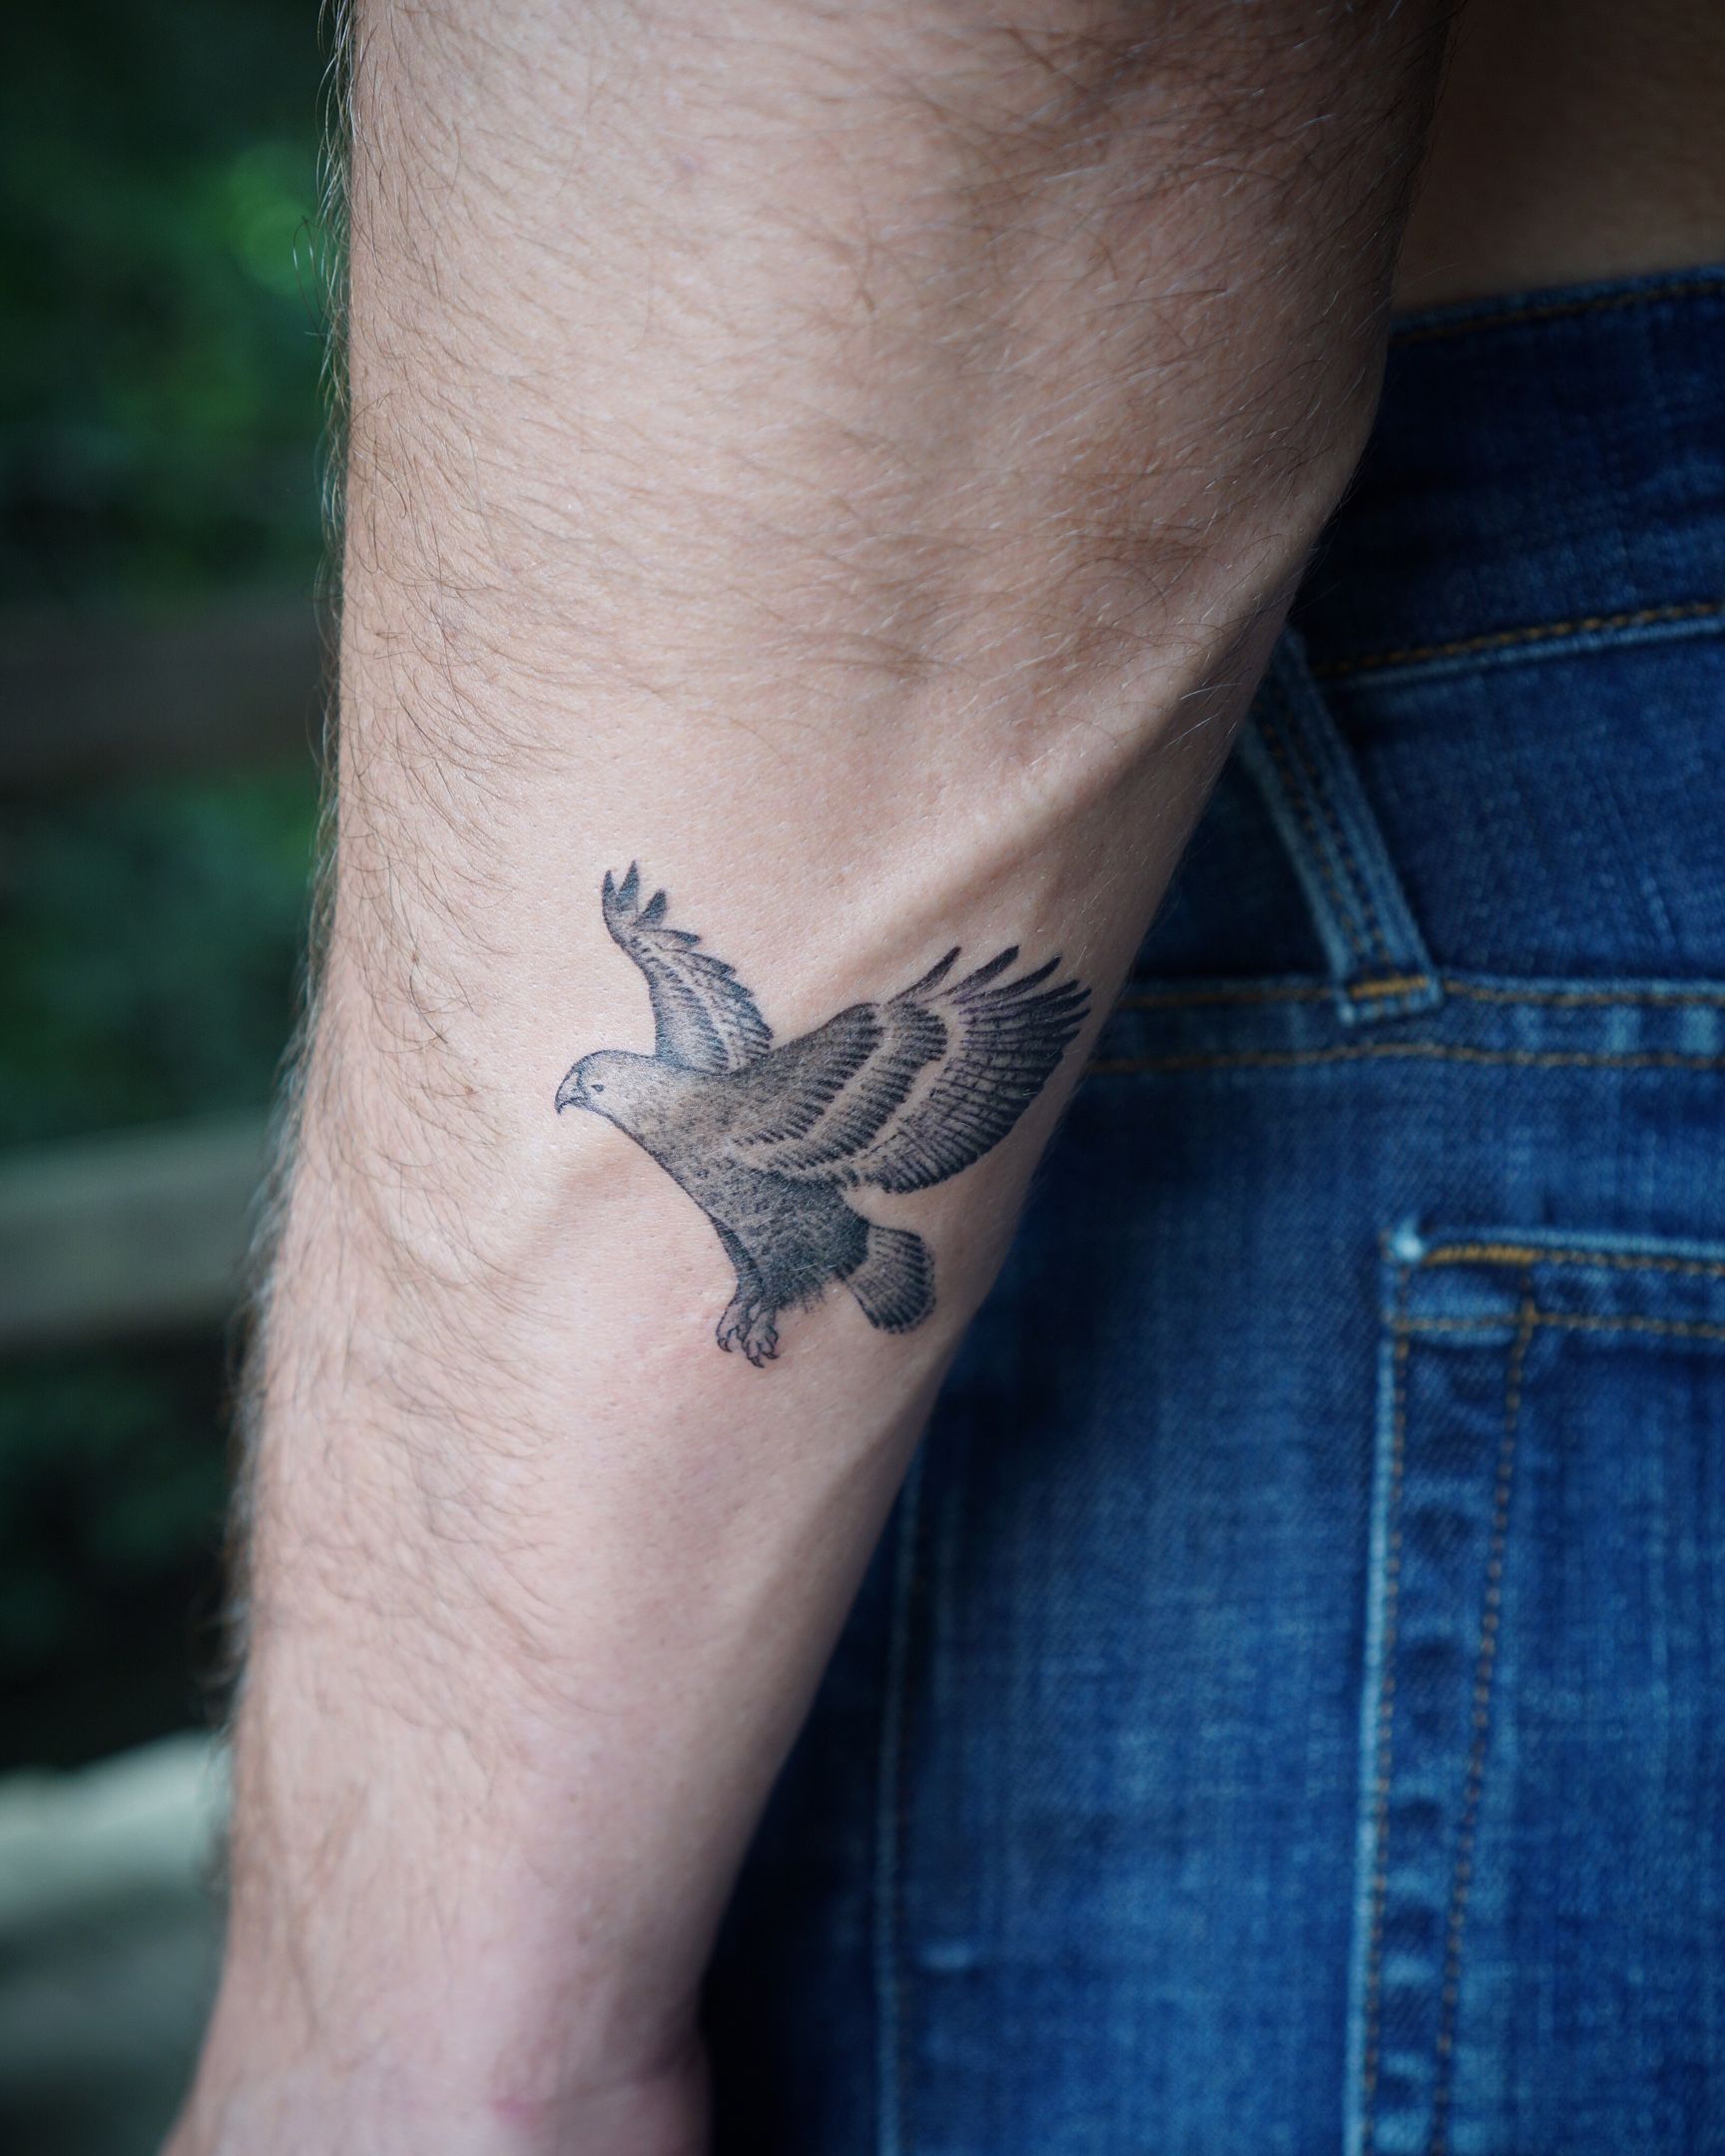 توییتر  Minimalist Tattoo Ideas در توییتر tattoo tattooidea  tattoodesign ink blacktattoo birdtattoo cutetattoo tattoominimalism  minimalisttattoo armtattoo crowtattoo raventattoo  httpstcohxjXnjdaKN httpstco8dJyf8QNKT